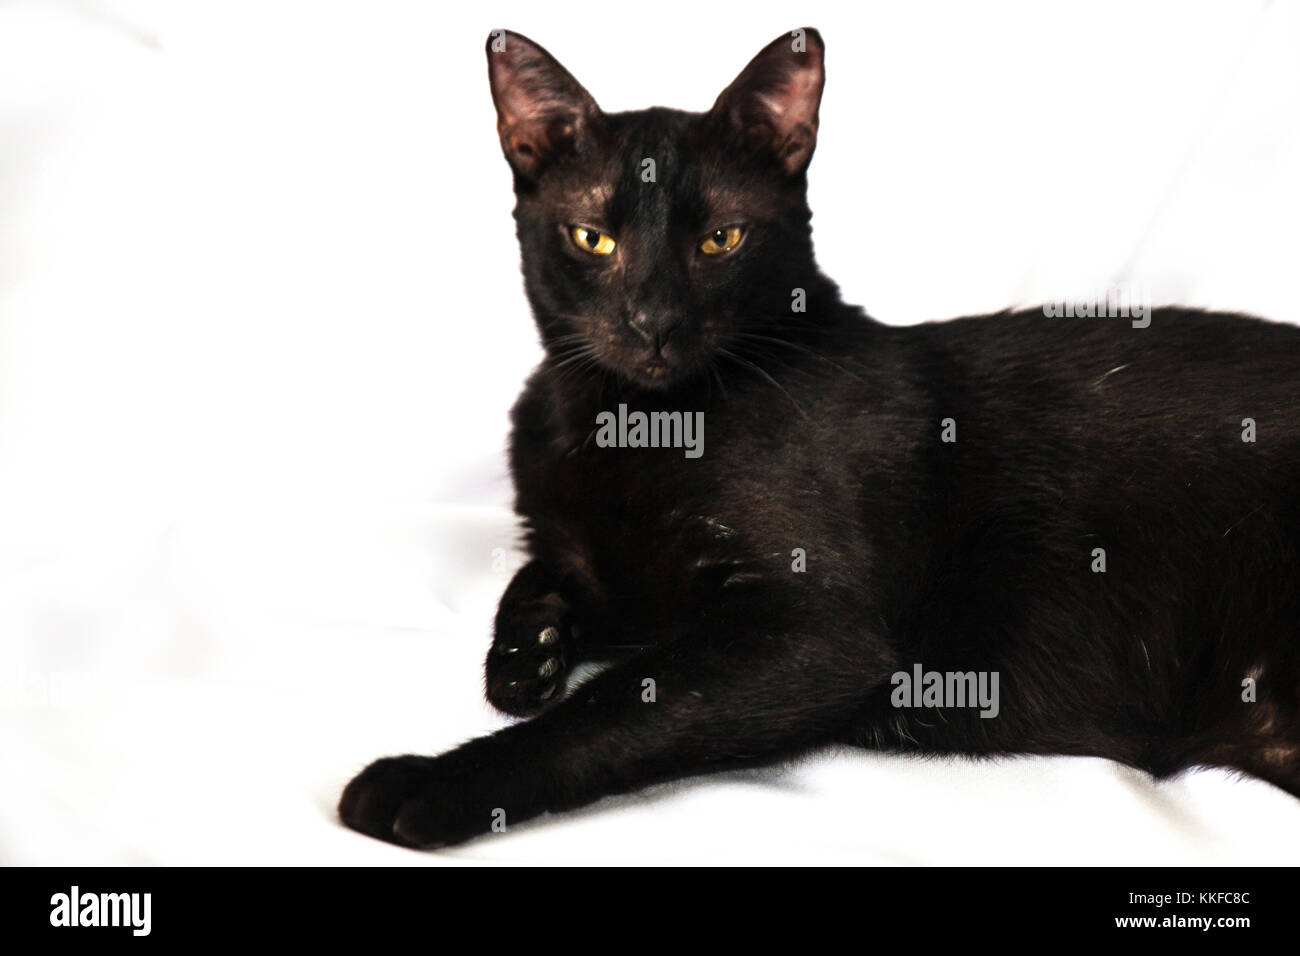 Gato negro el arte de fotografía en el stusio Foto de stock